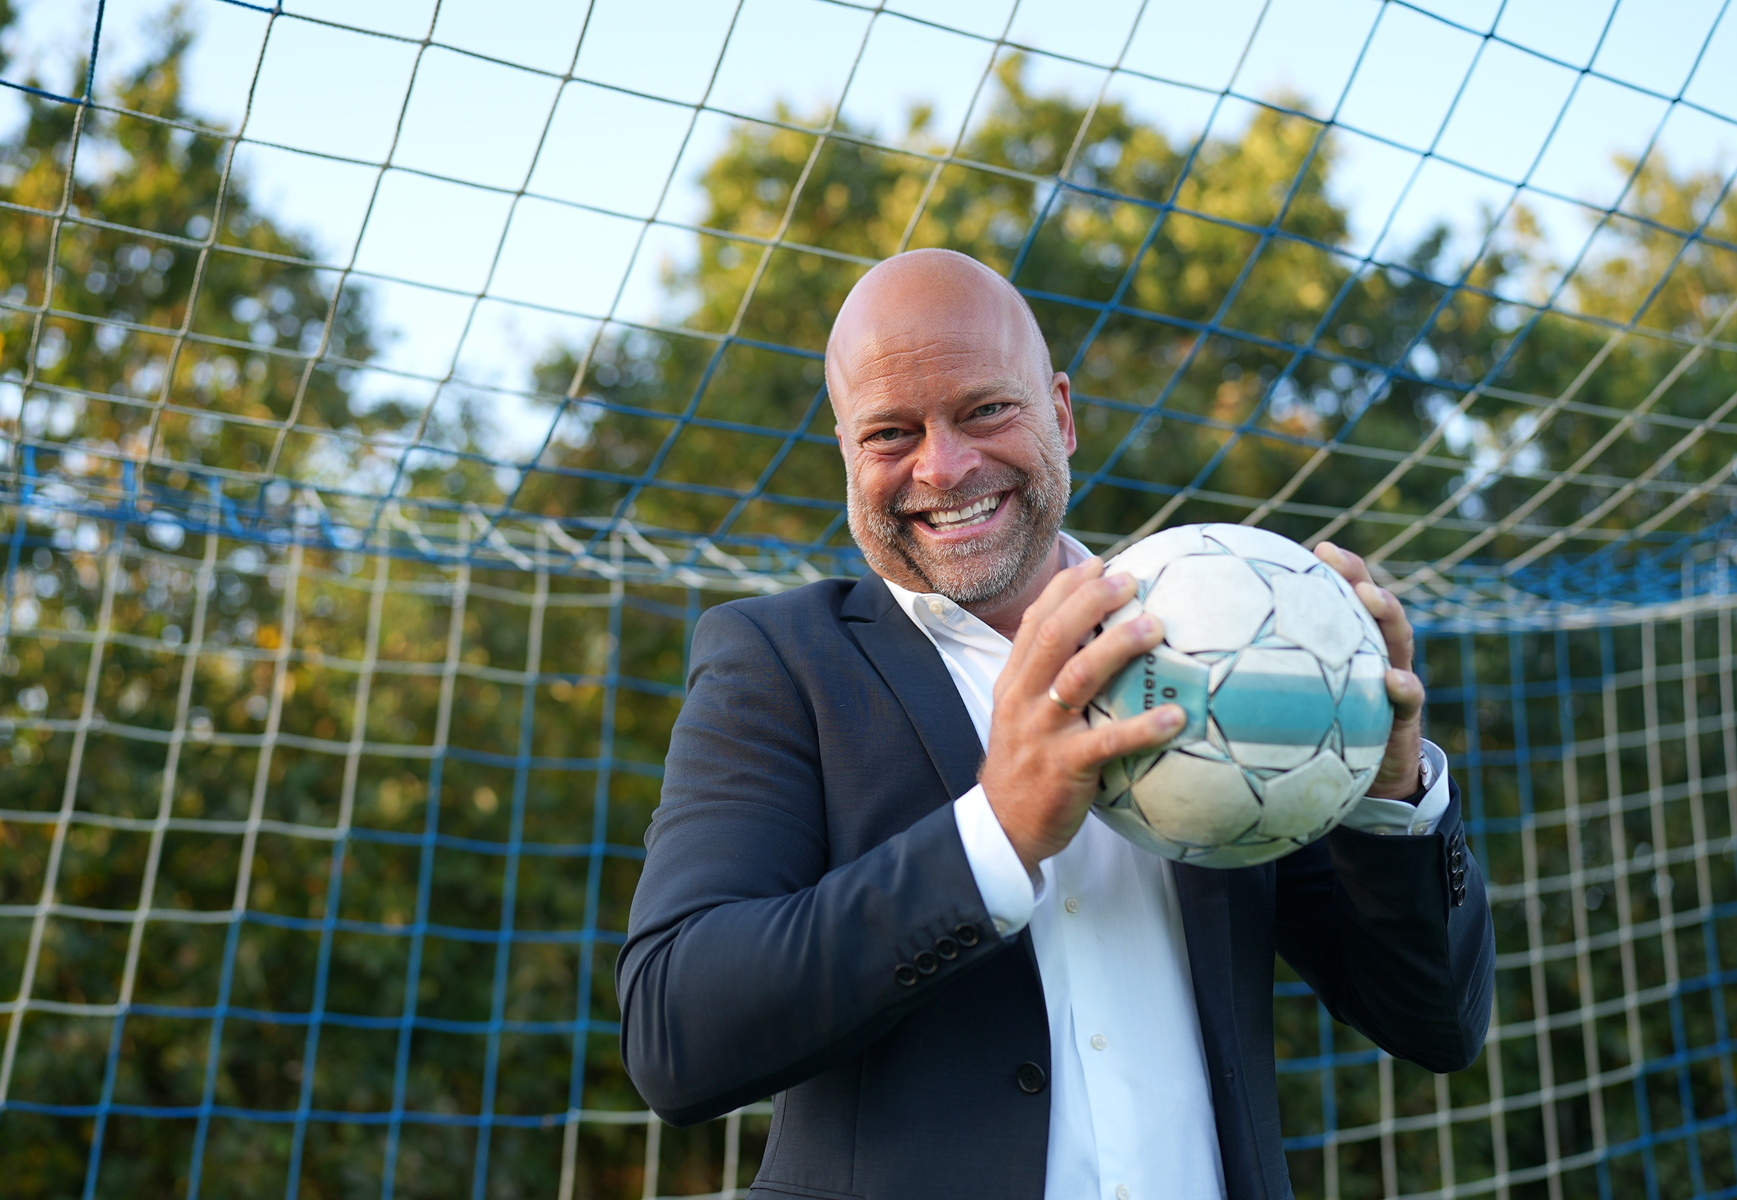 Nordjysk fodboldklub får ny direktør: ”Vi skal tilbage i Superligaen”